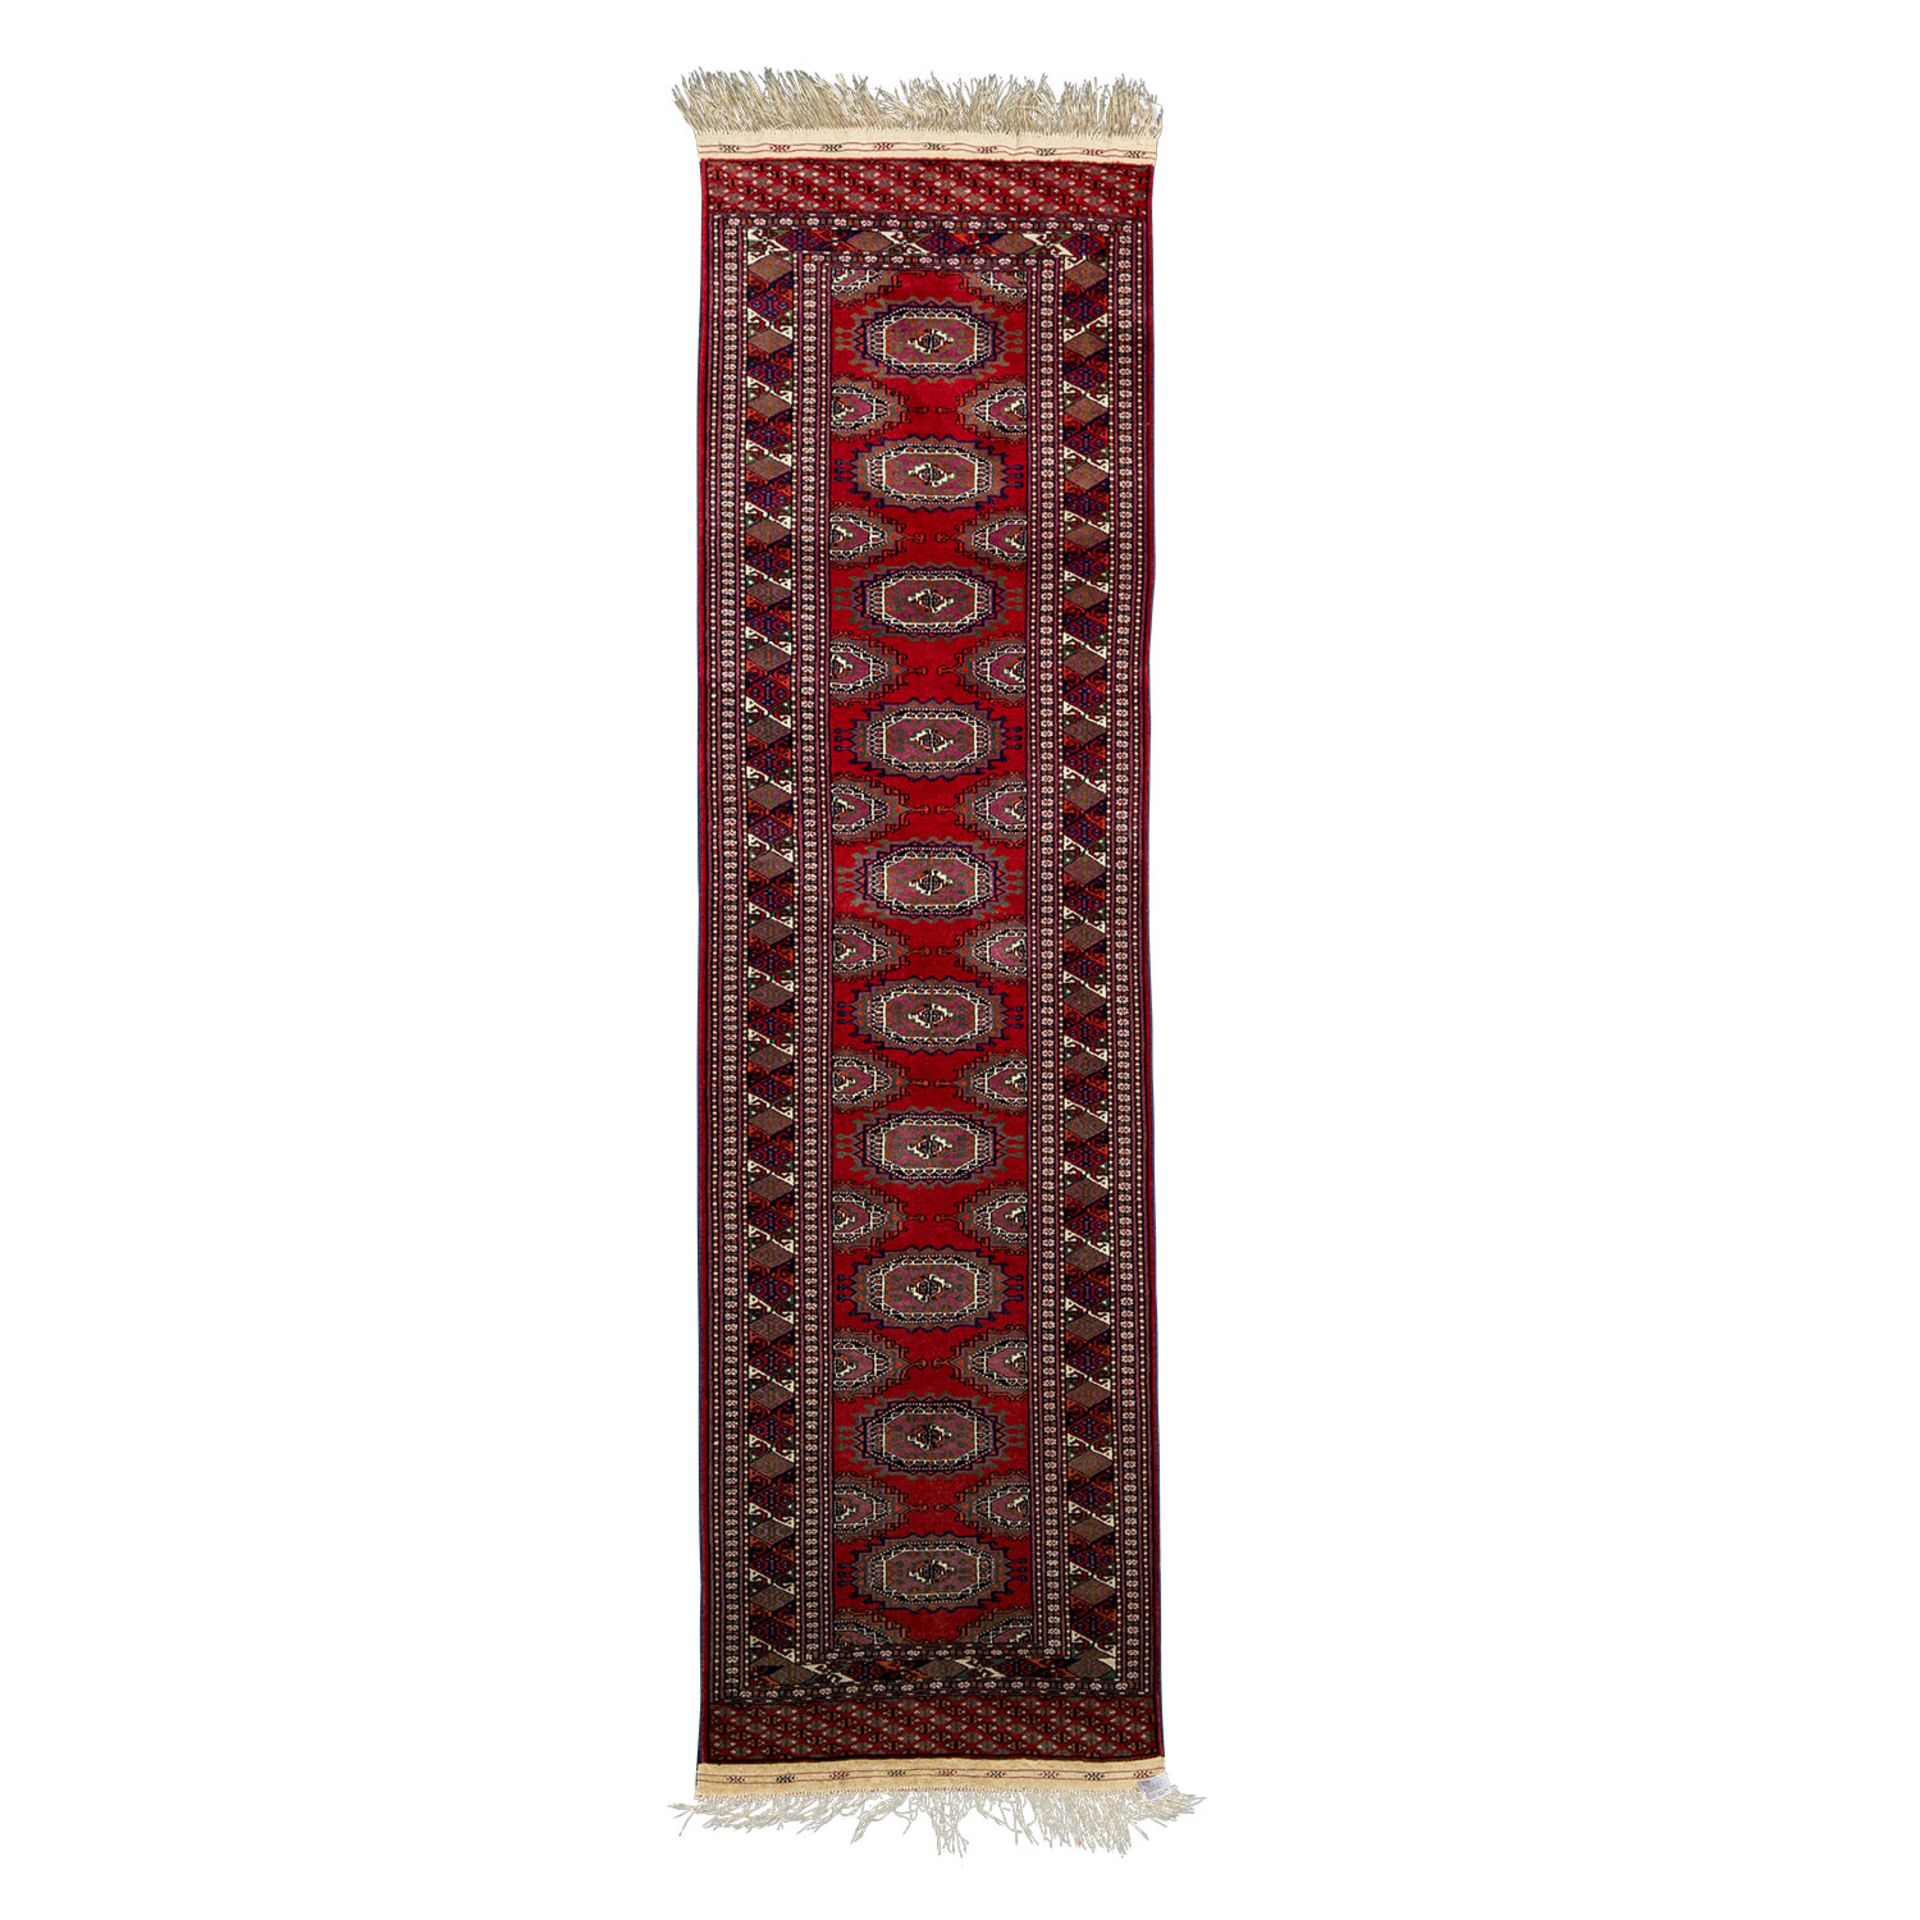 Orientteppich. Galerie, PAKISTAN, 20. Jh., ca. 270x74 cm.Der rote Fond des Innenfeldes zeigt ein